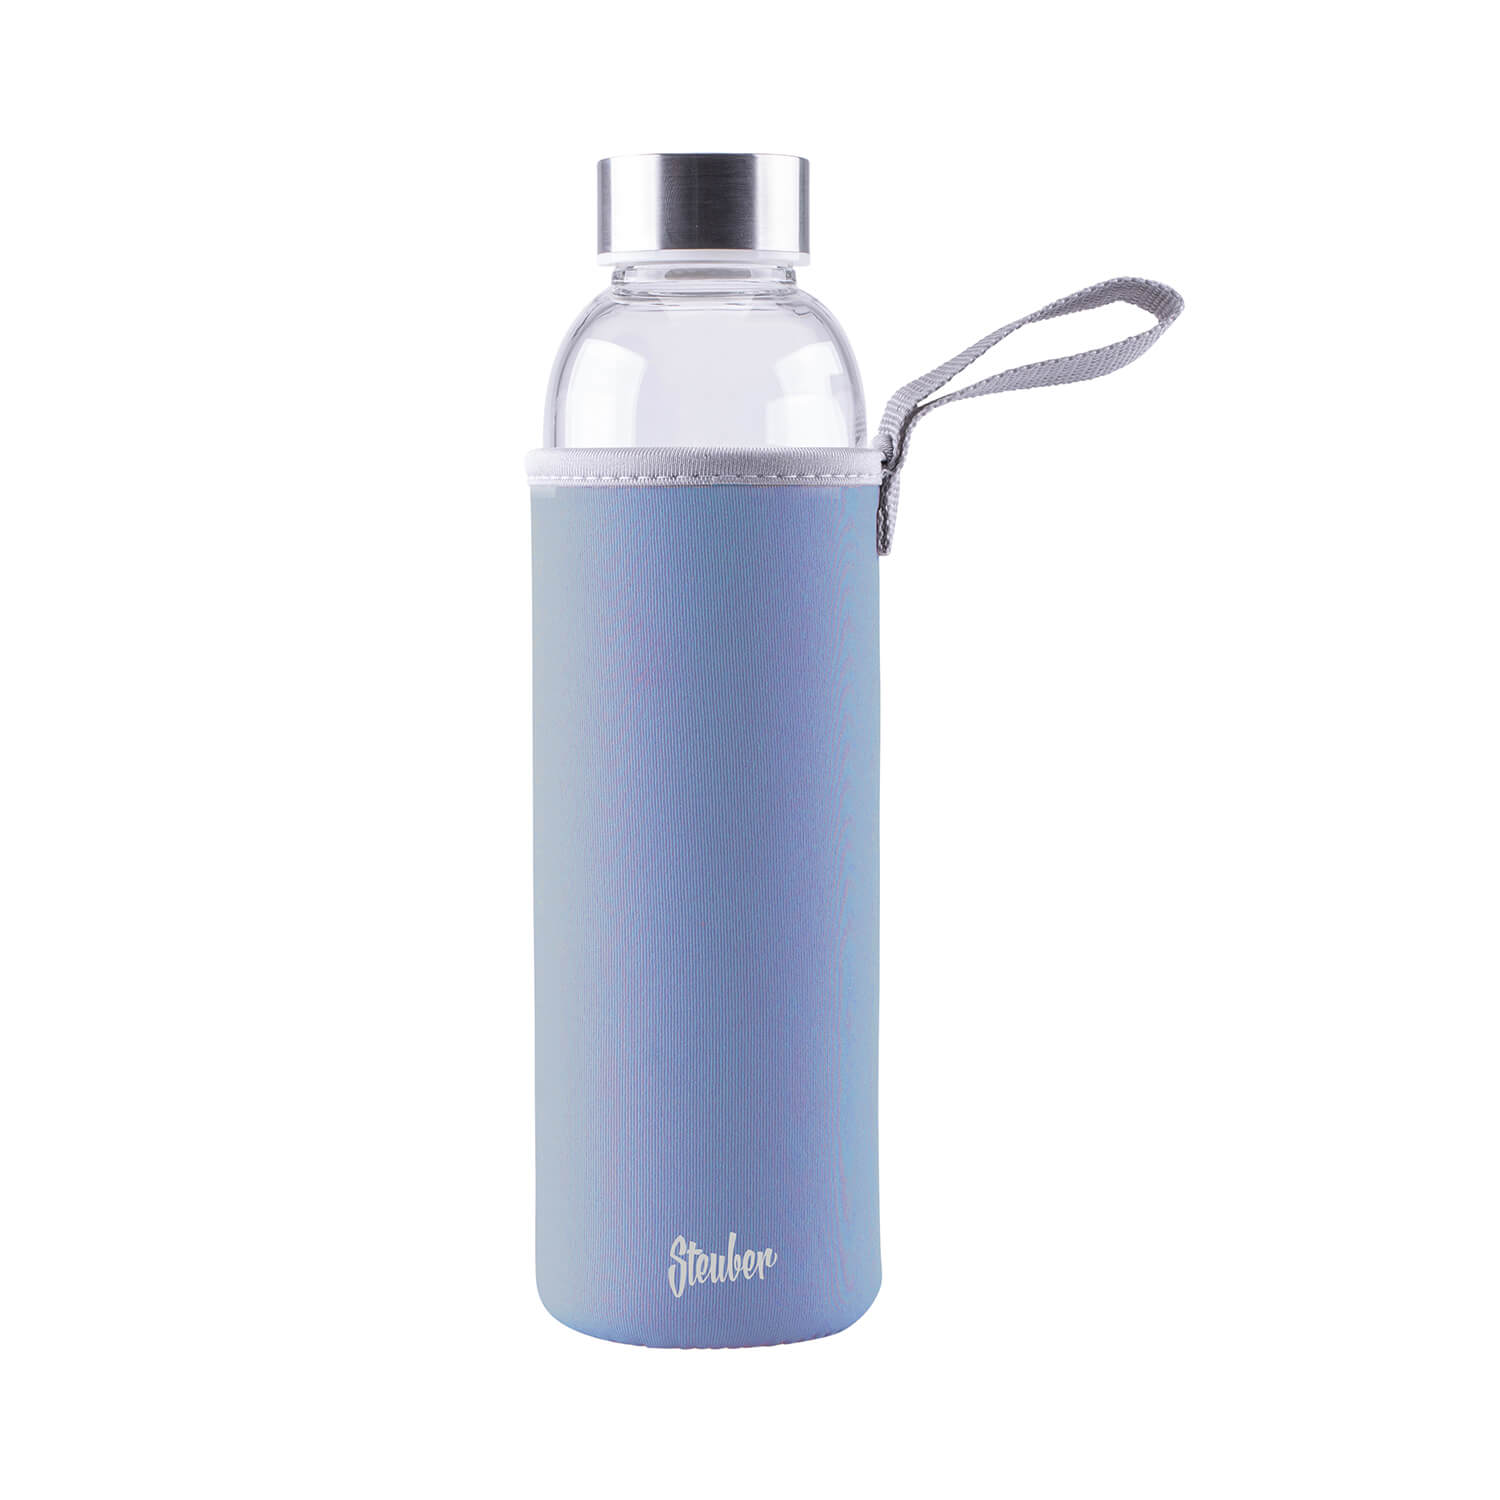 Steuber Glastrinkflasche mit Tasche und Tragelasche, Borosilikatglas mit Edelstahldeckel, 1000 ml, blau